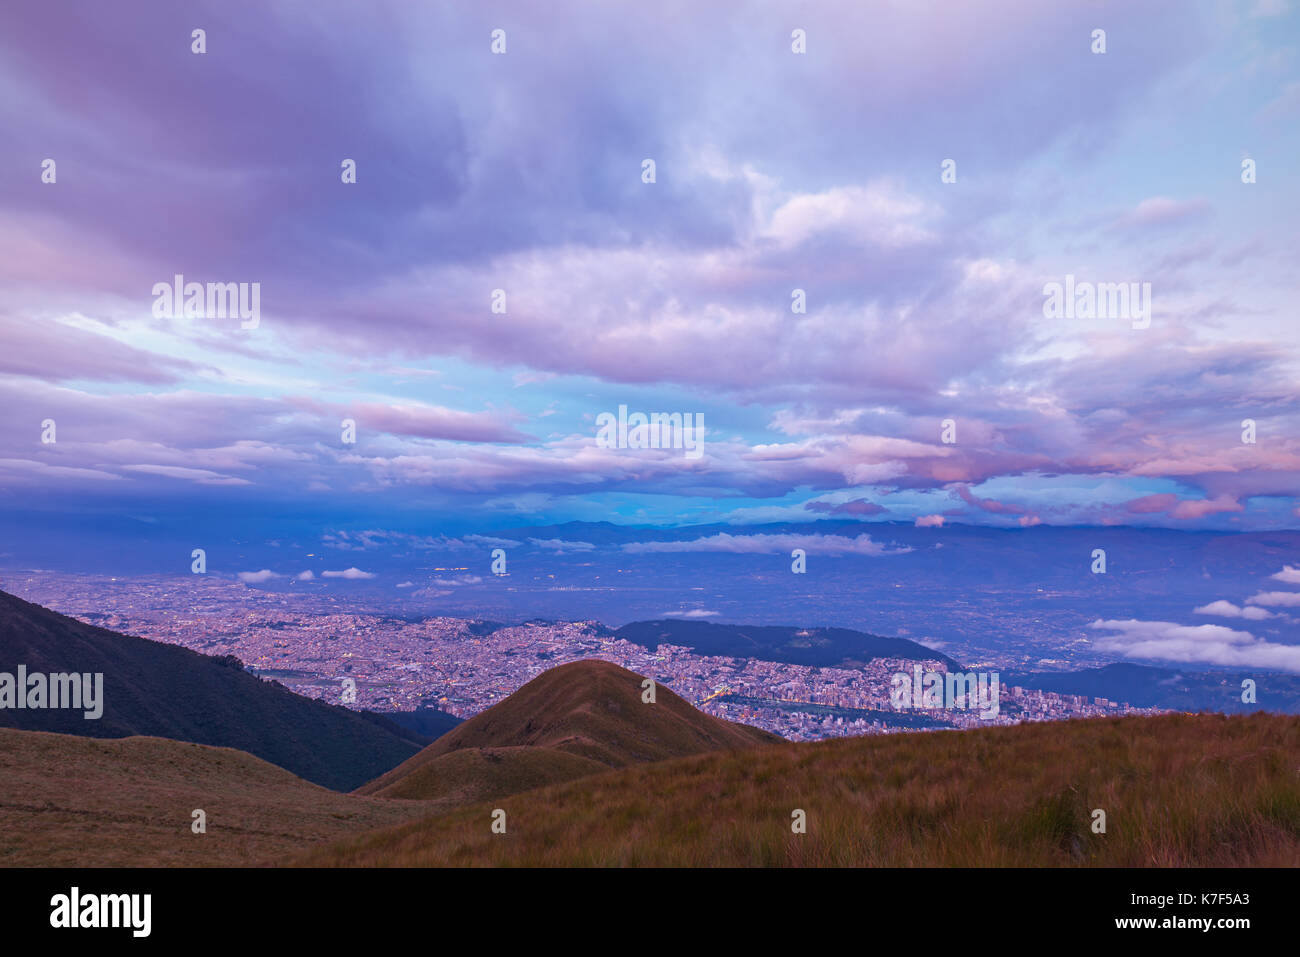 El horizonte de la ciudad de Quito en la penumbra con un tiempo de exposición y vista aérea fotografía visto desde el activo volcán Pichincha, Ecuador, América Latina. Foto de stock